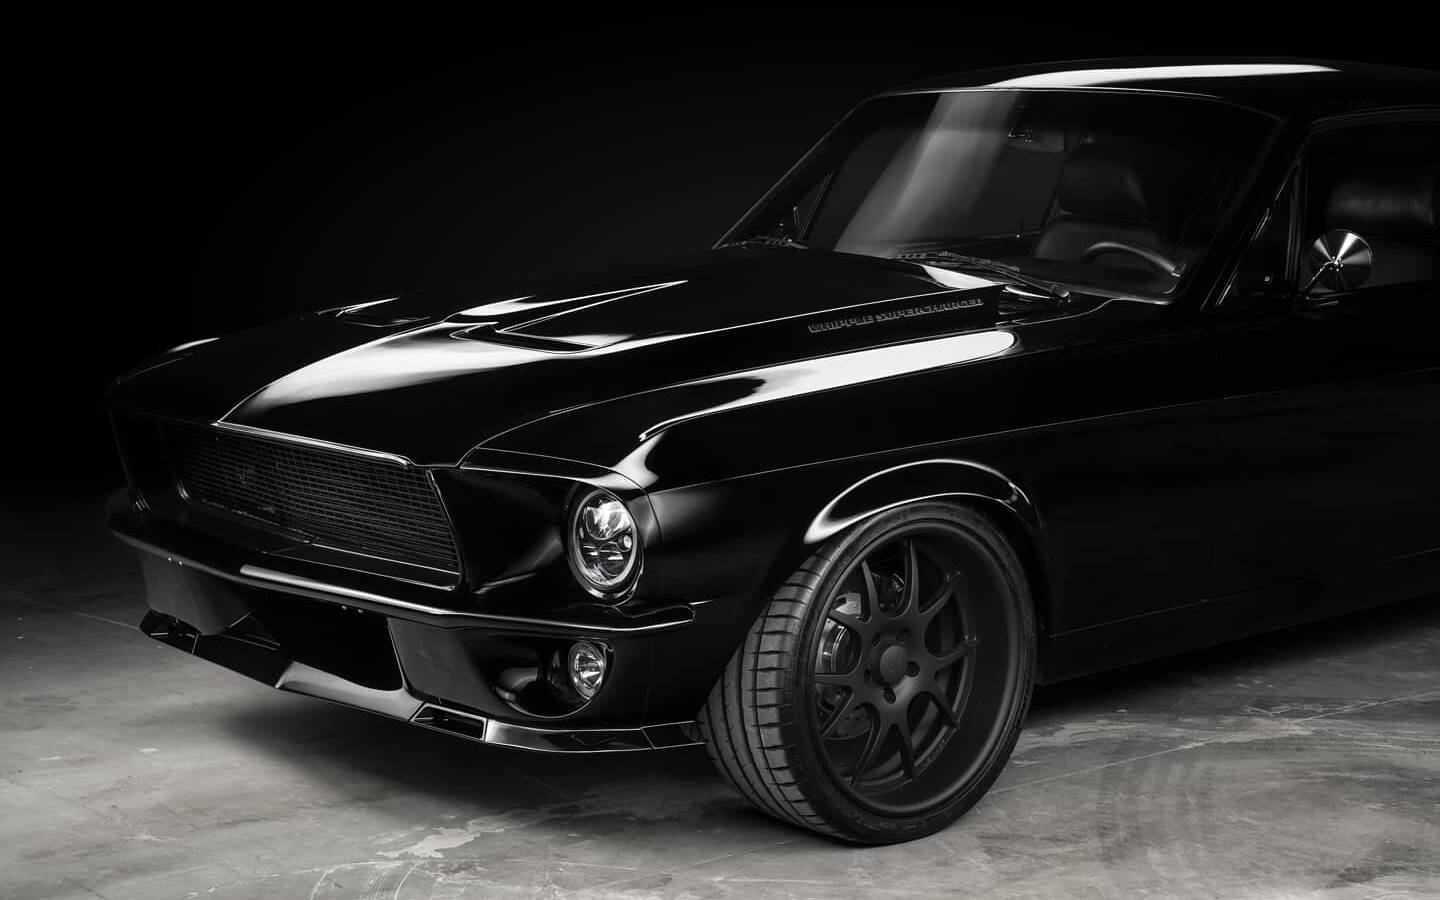 SEMA 2020 : une Mustang 1967 tout en noir de 800 chevaux 448942-on-raffole-de-cette-mustang-1967-tout-en-noir-de-800-chevaux